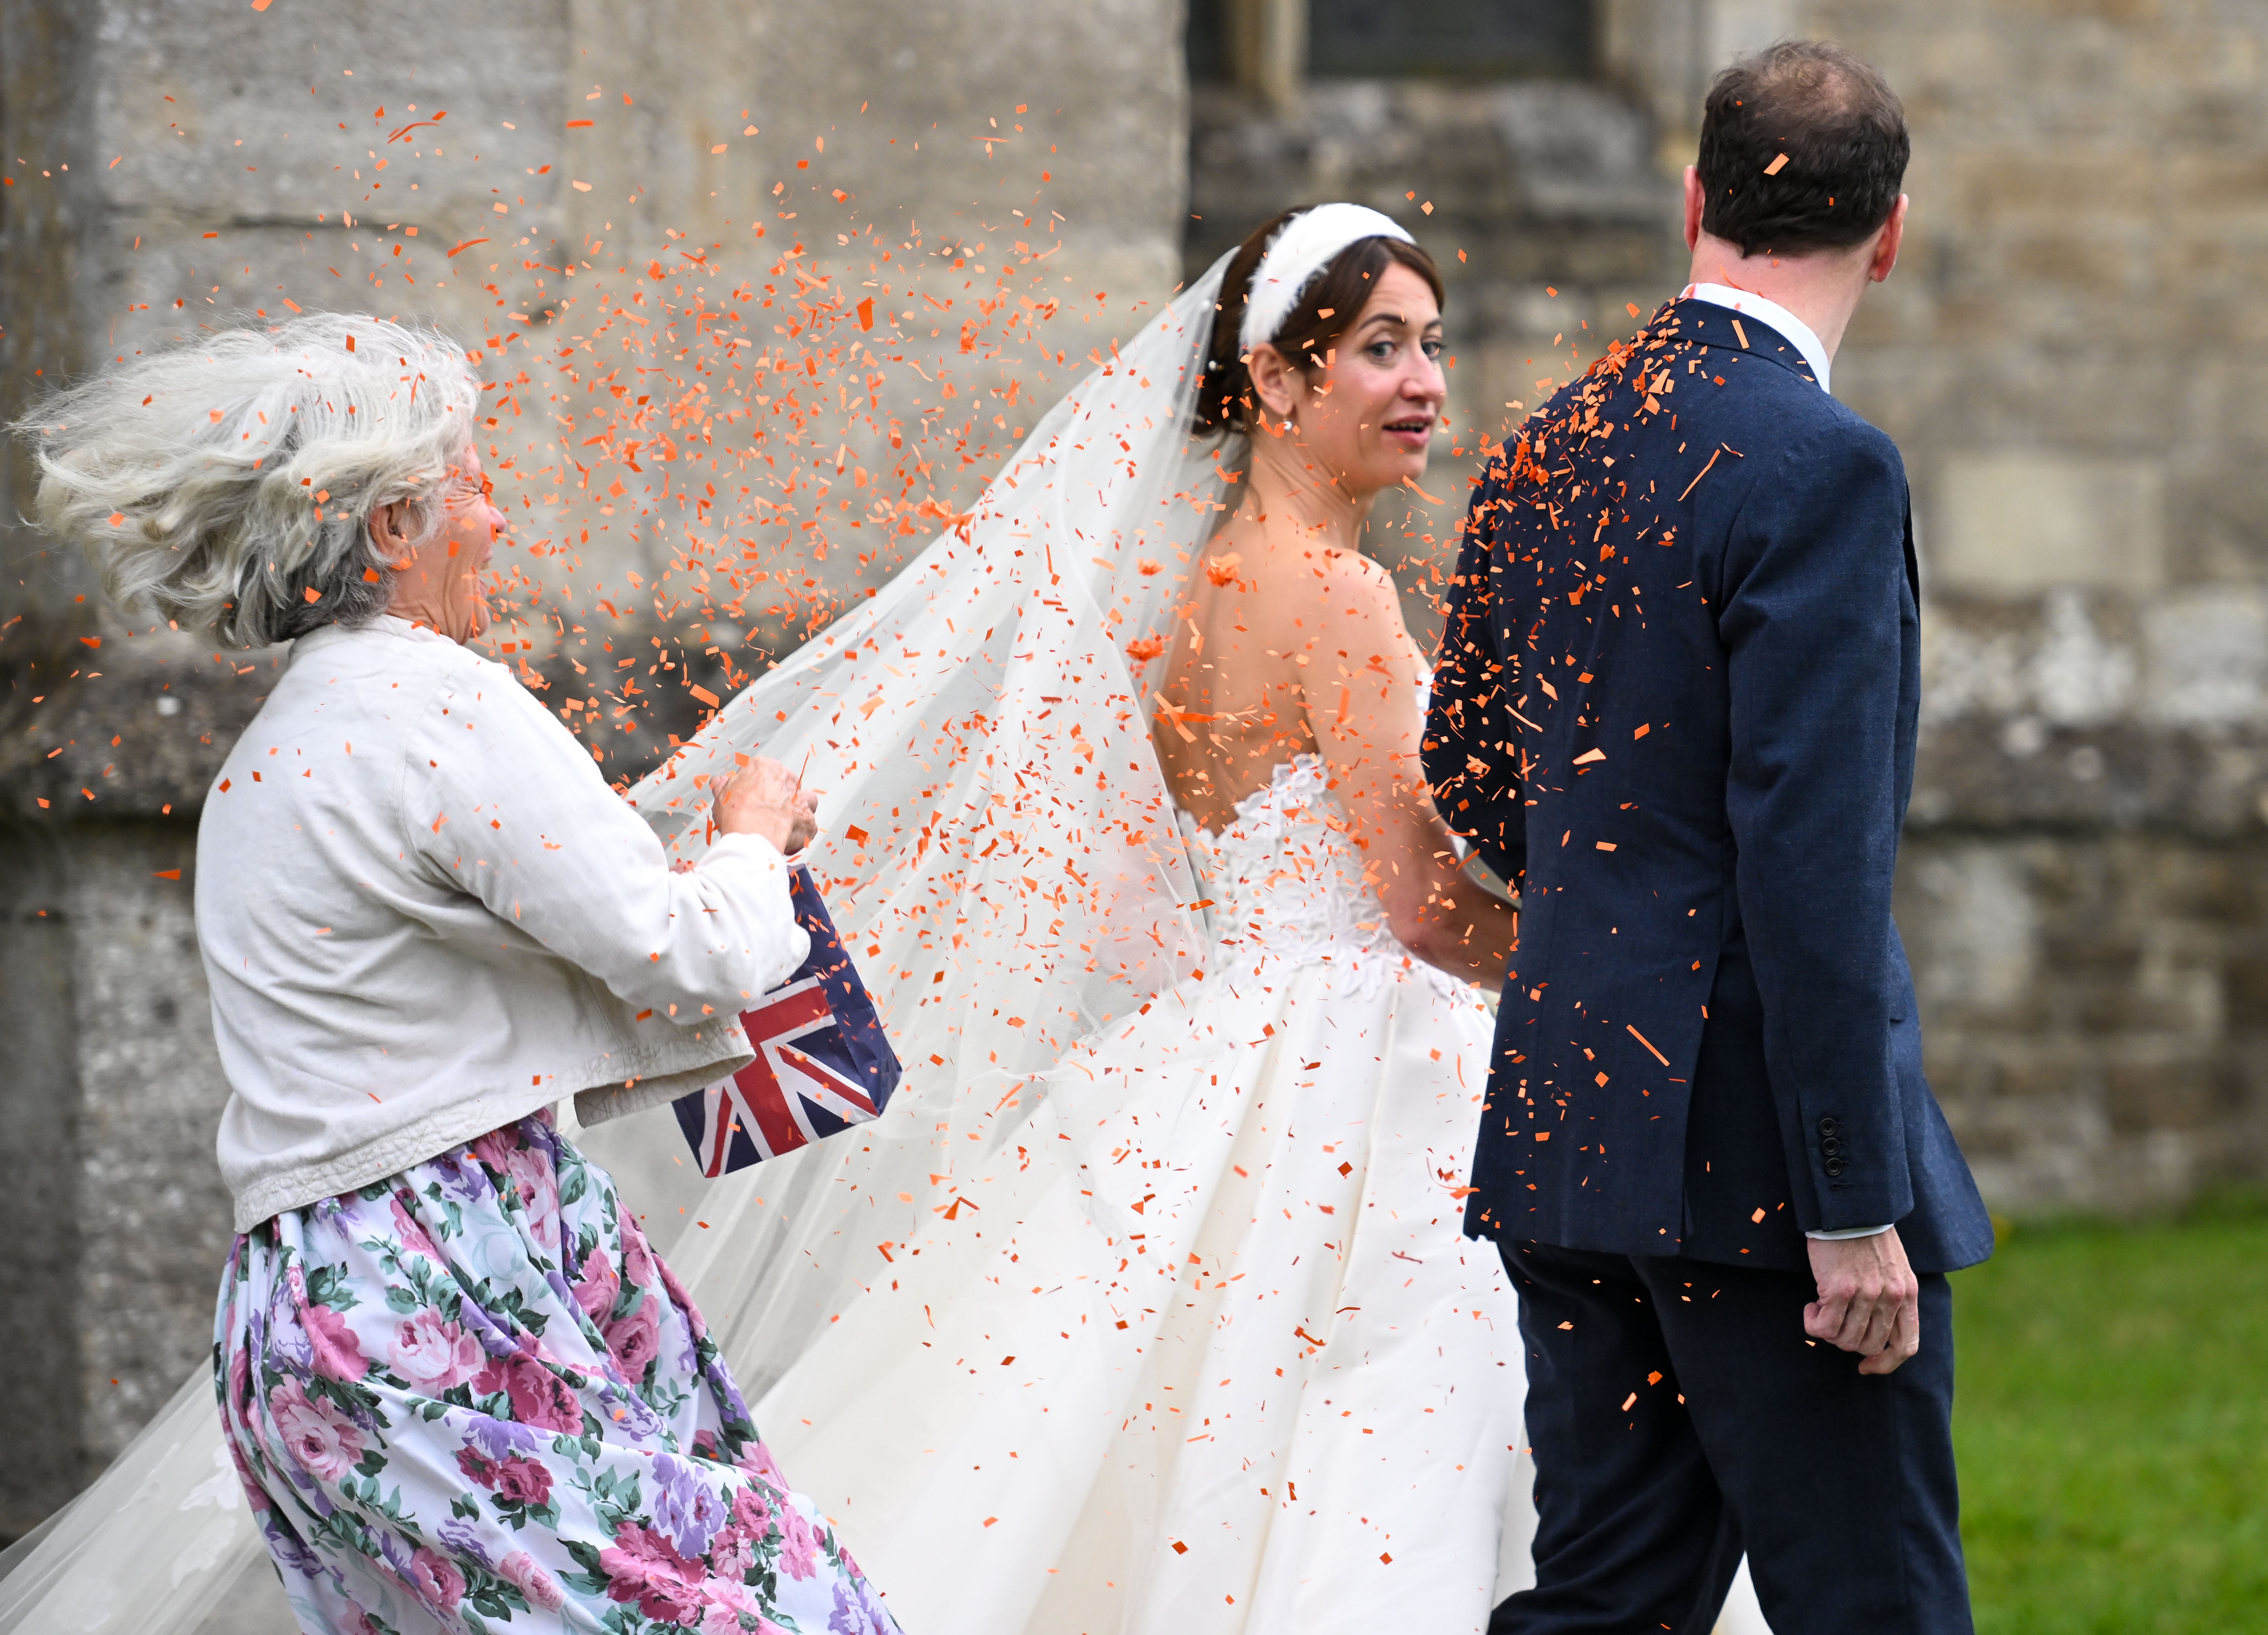 George Osborne und seine Braut Thea Rogers waren mit orangefarbenem Konfetti bedeckt